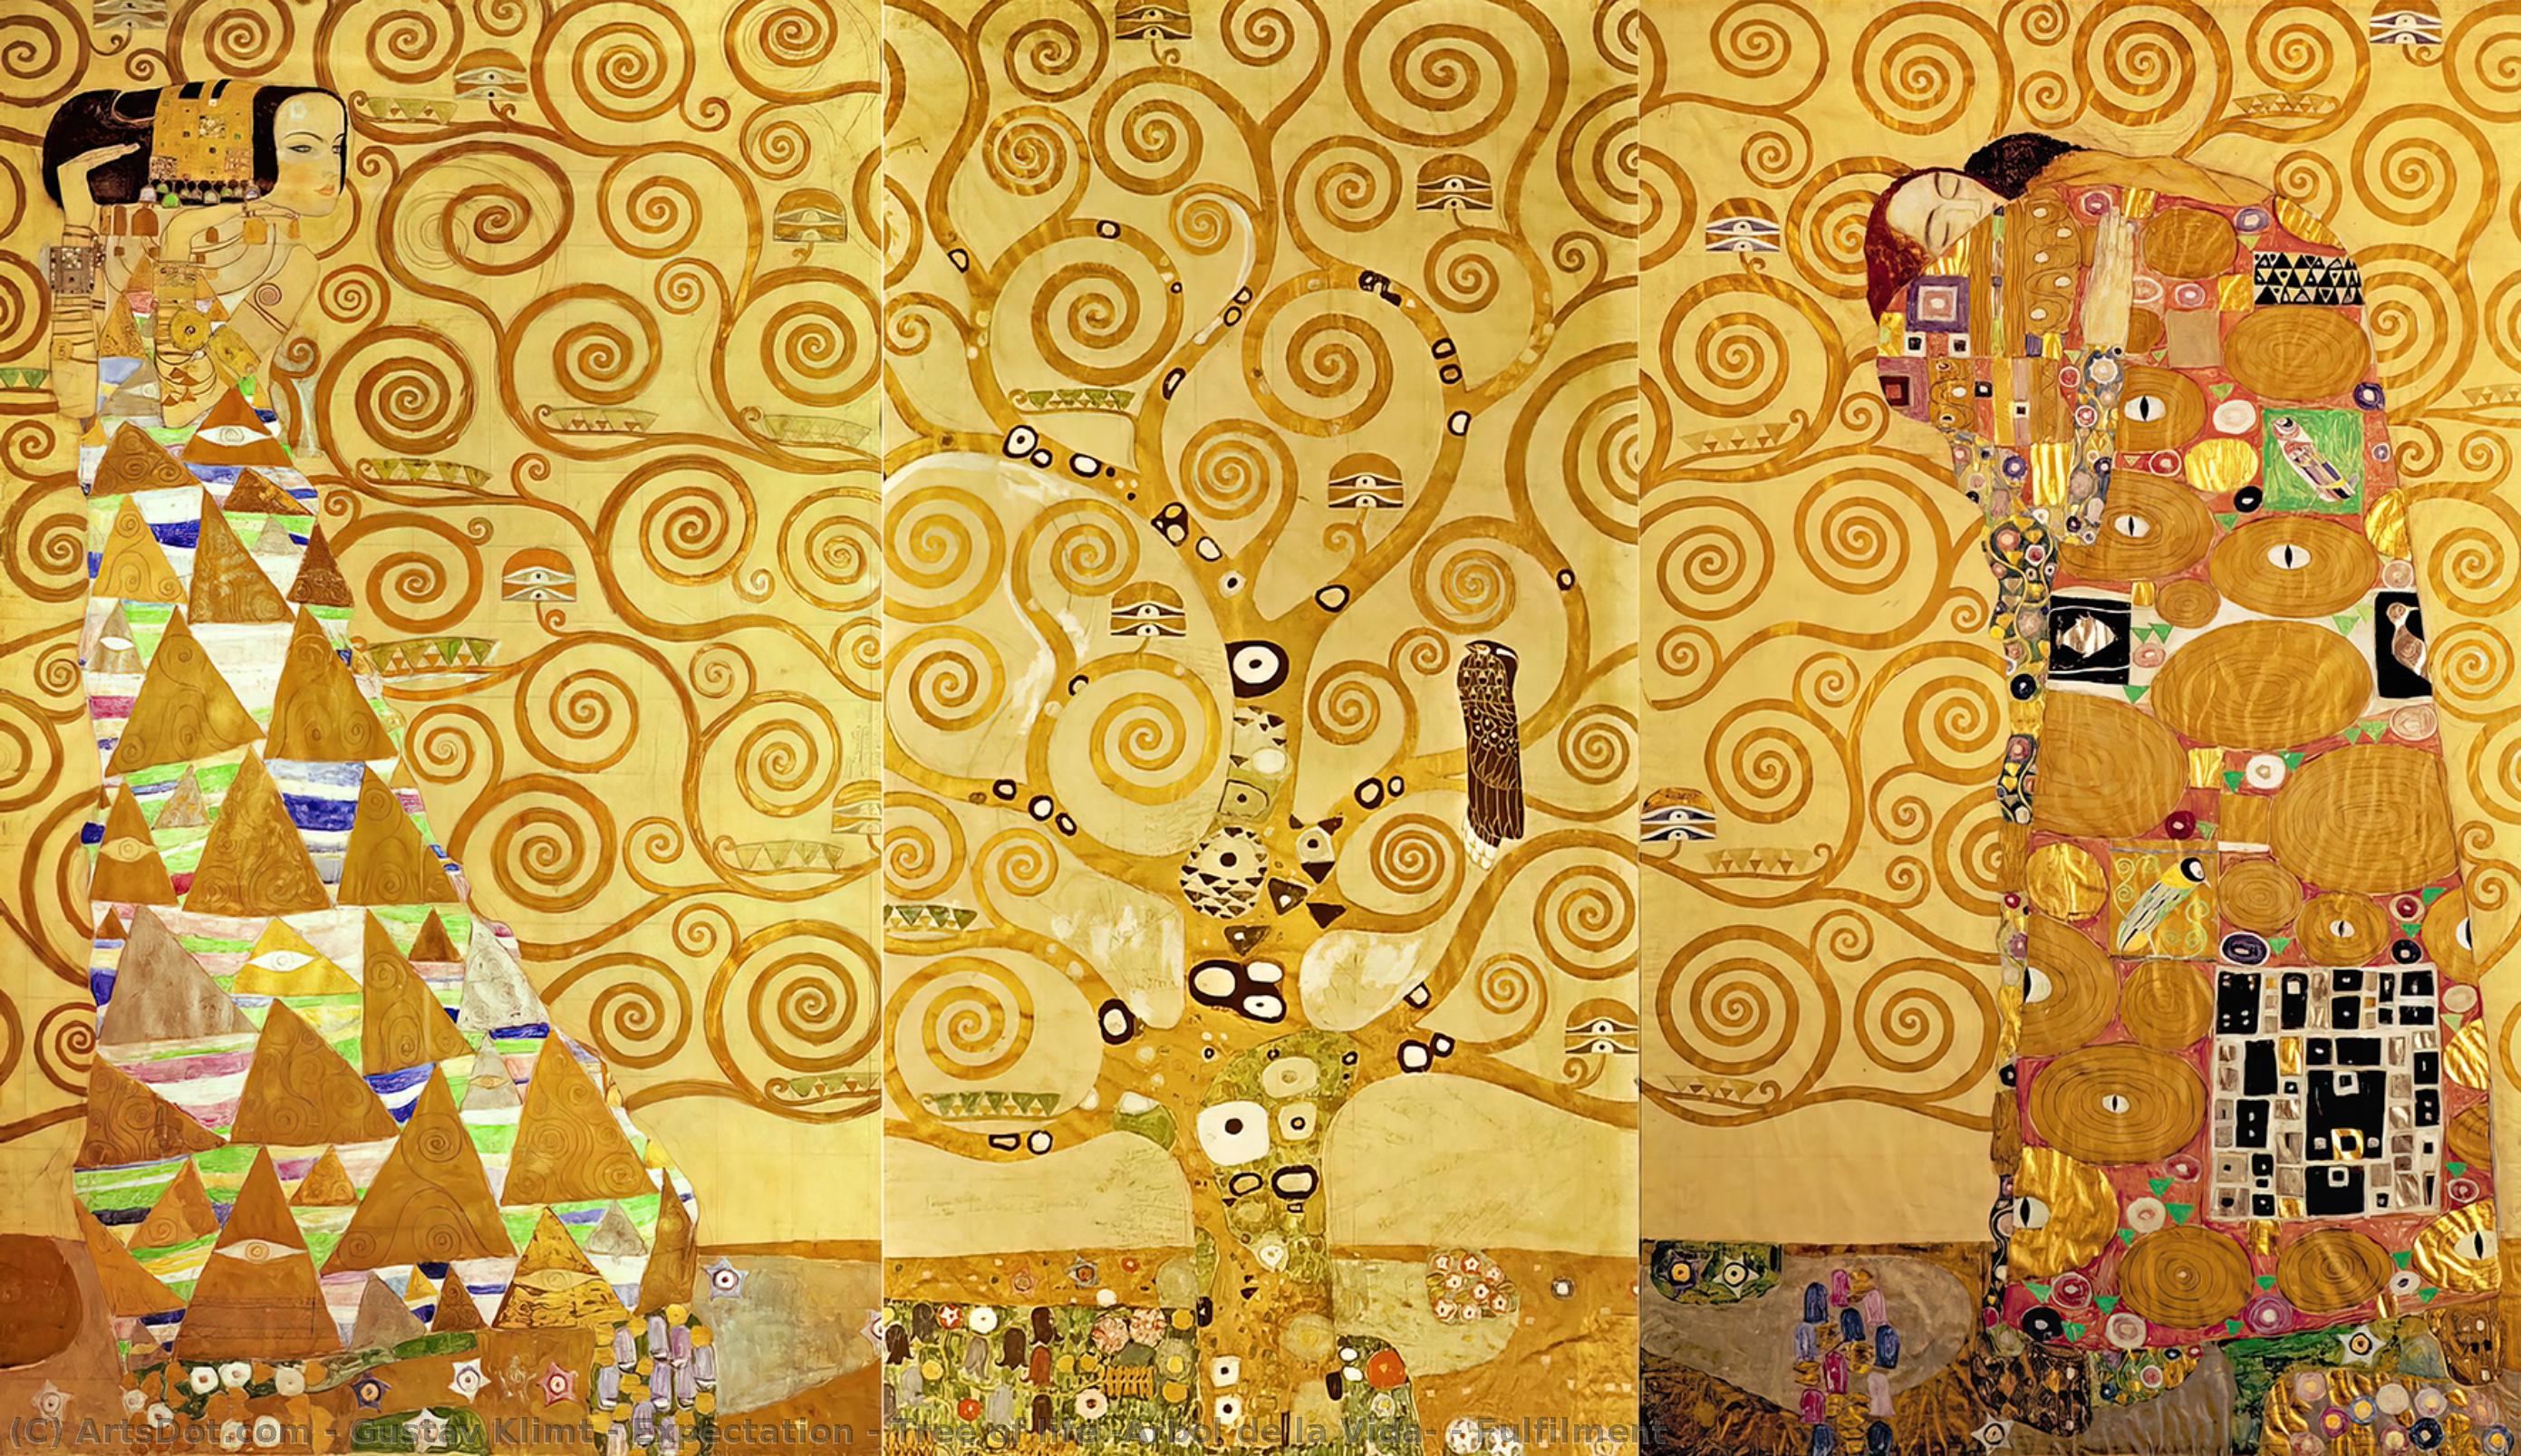 WikiOO.org - Güzel Sanatlar Ansiklopedisi - Resim, Resimler Gustav Klimt - Expectation - Tree of life (Arbol de la Vida) - Fulfilment